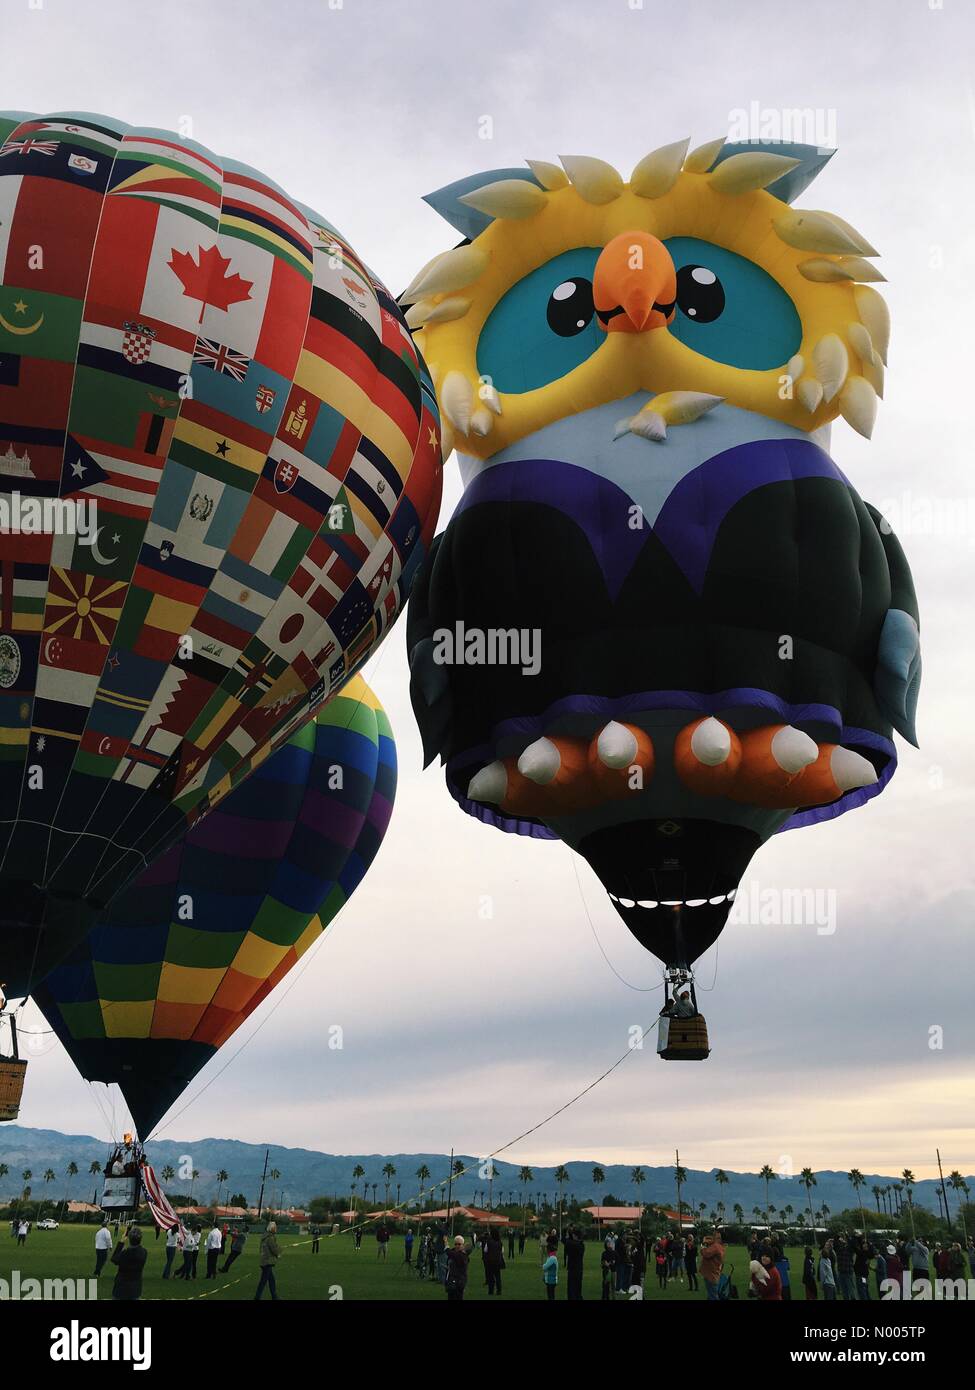 Indio, Kalifornien - 23. Januar 2016 Hot Air Balloon Festival zugunsten von Familien des U.s. Marine Corps. Bildnachweis: Lisa Werner / Stockimo News/Alamy Stockfoto